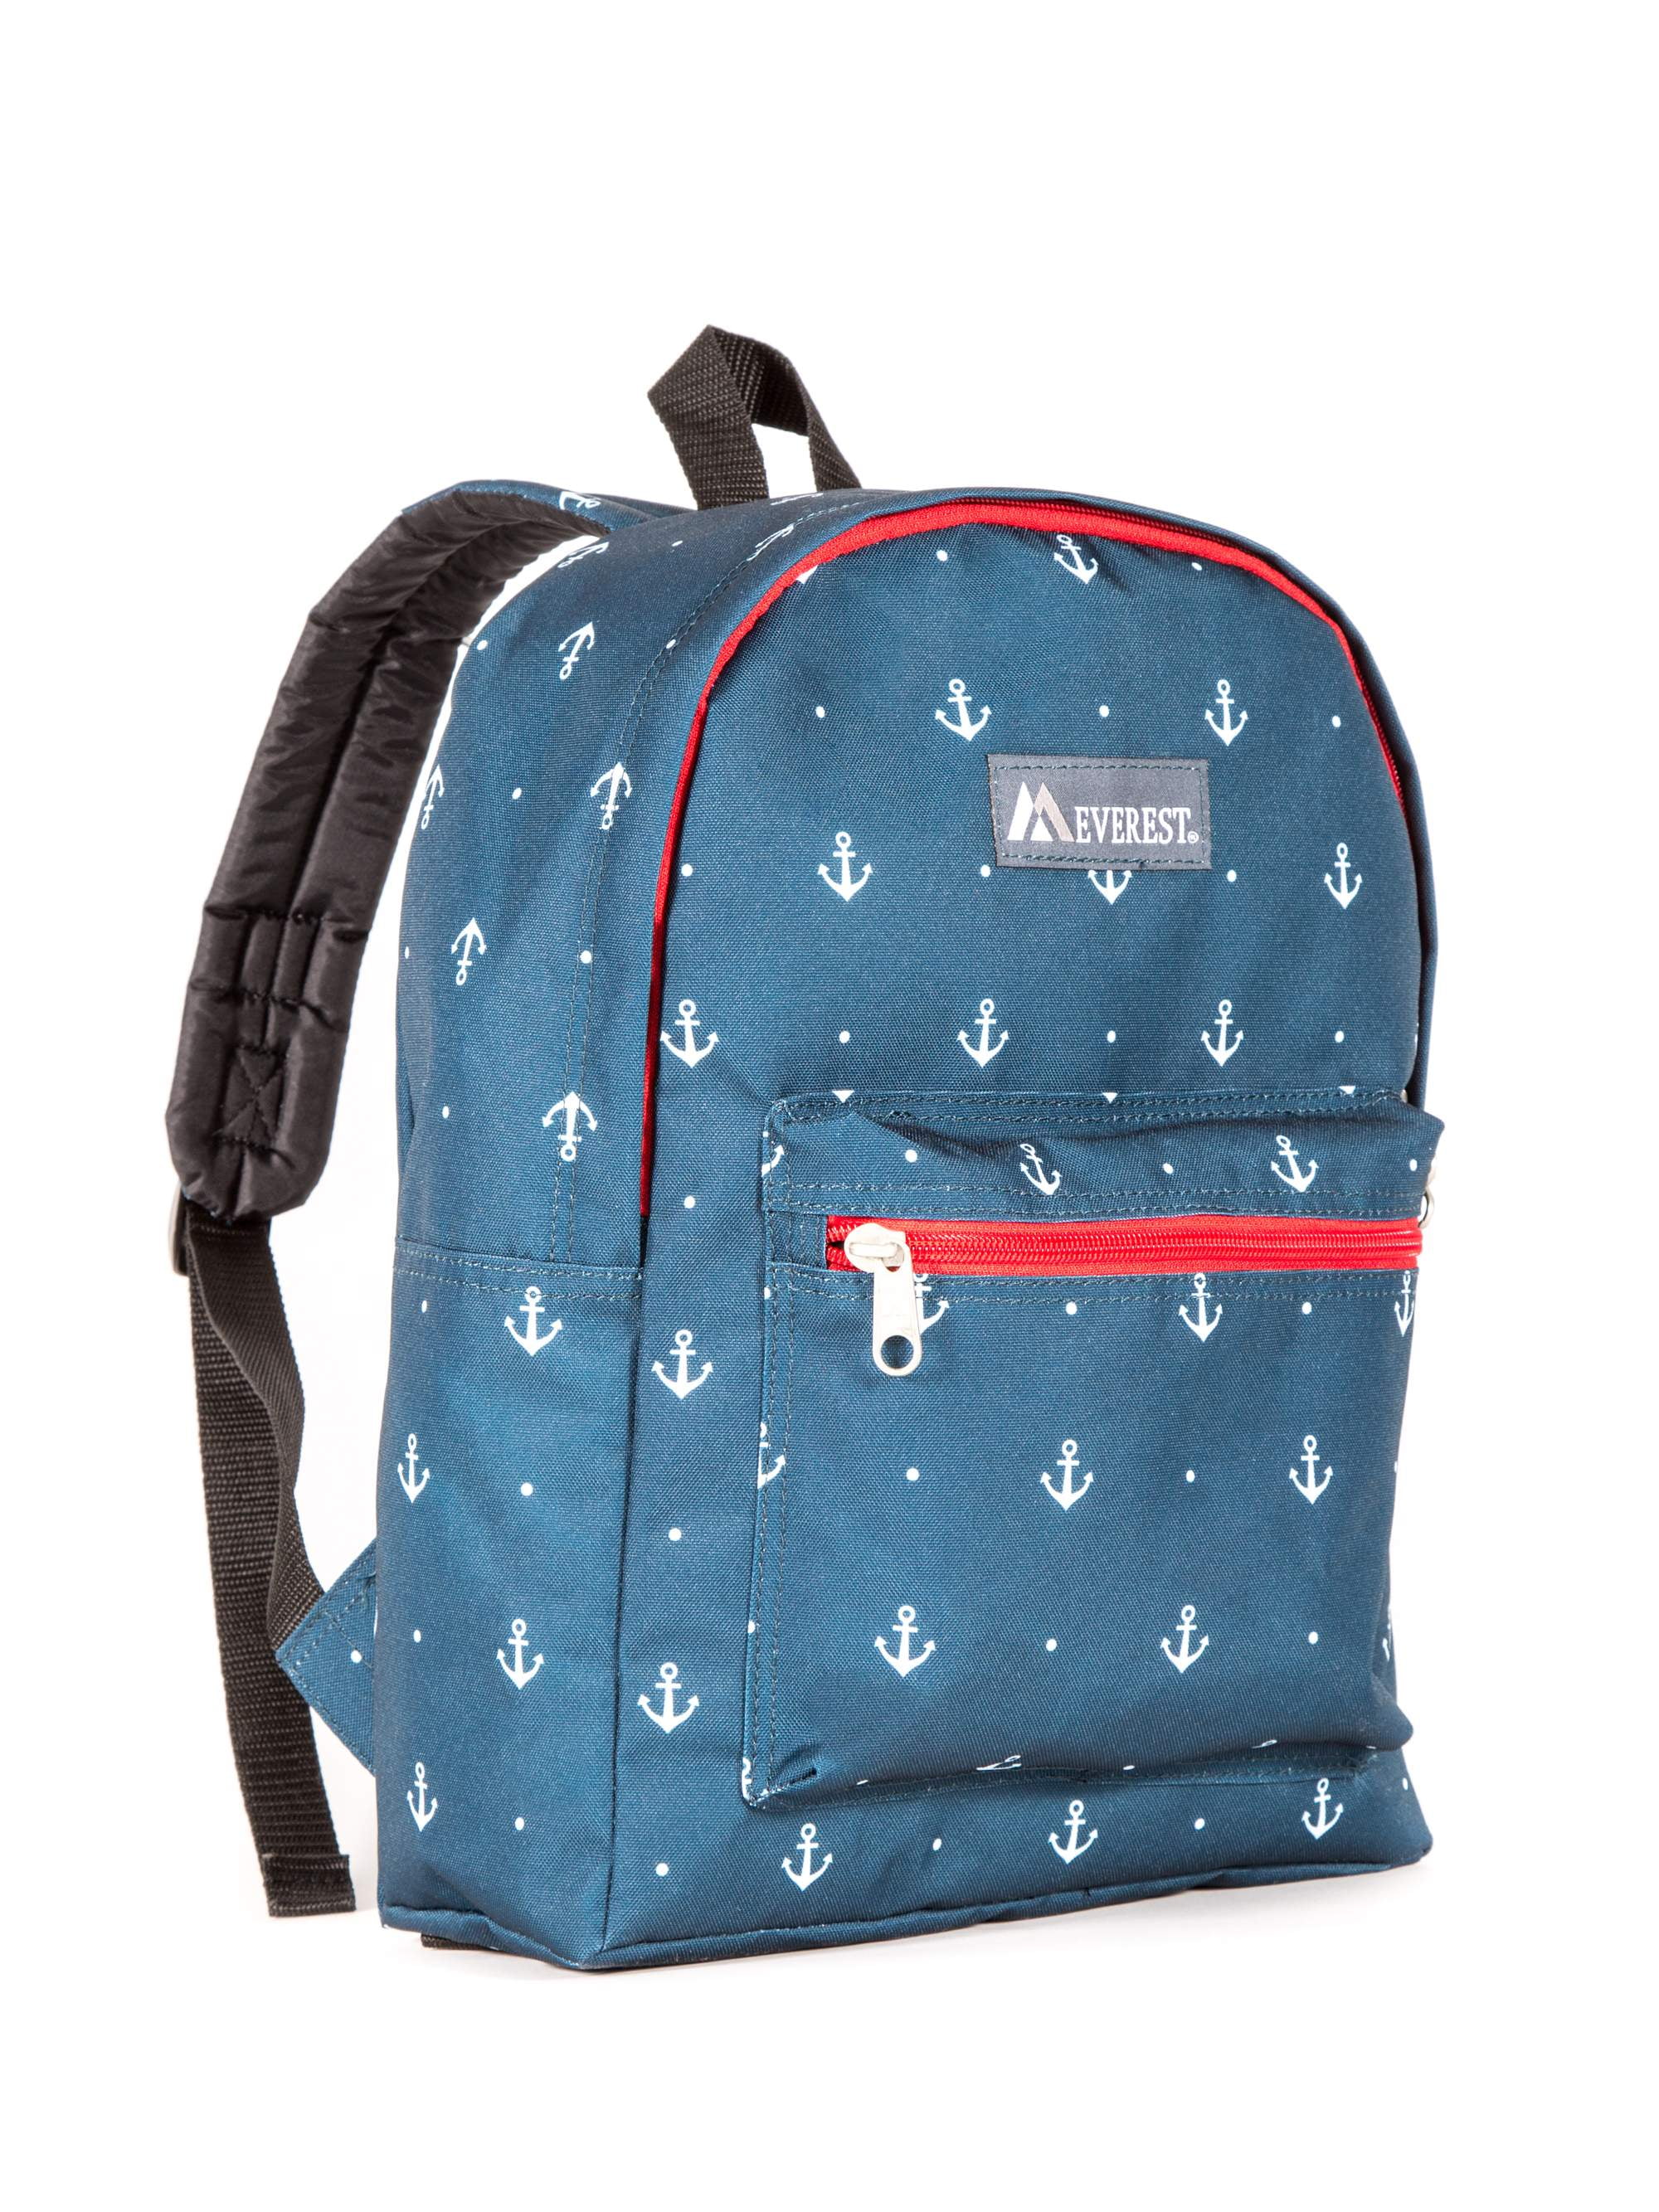 Pouch Bag Shoulder Bag Sports Bag Gym Bag Backpack Nautical Anchor 